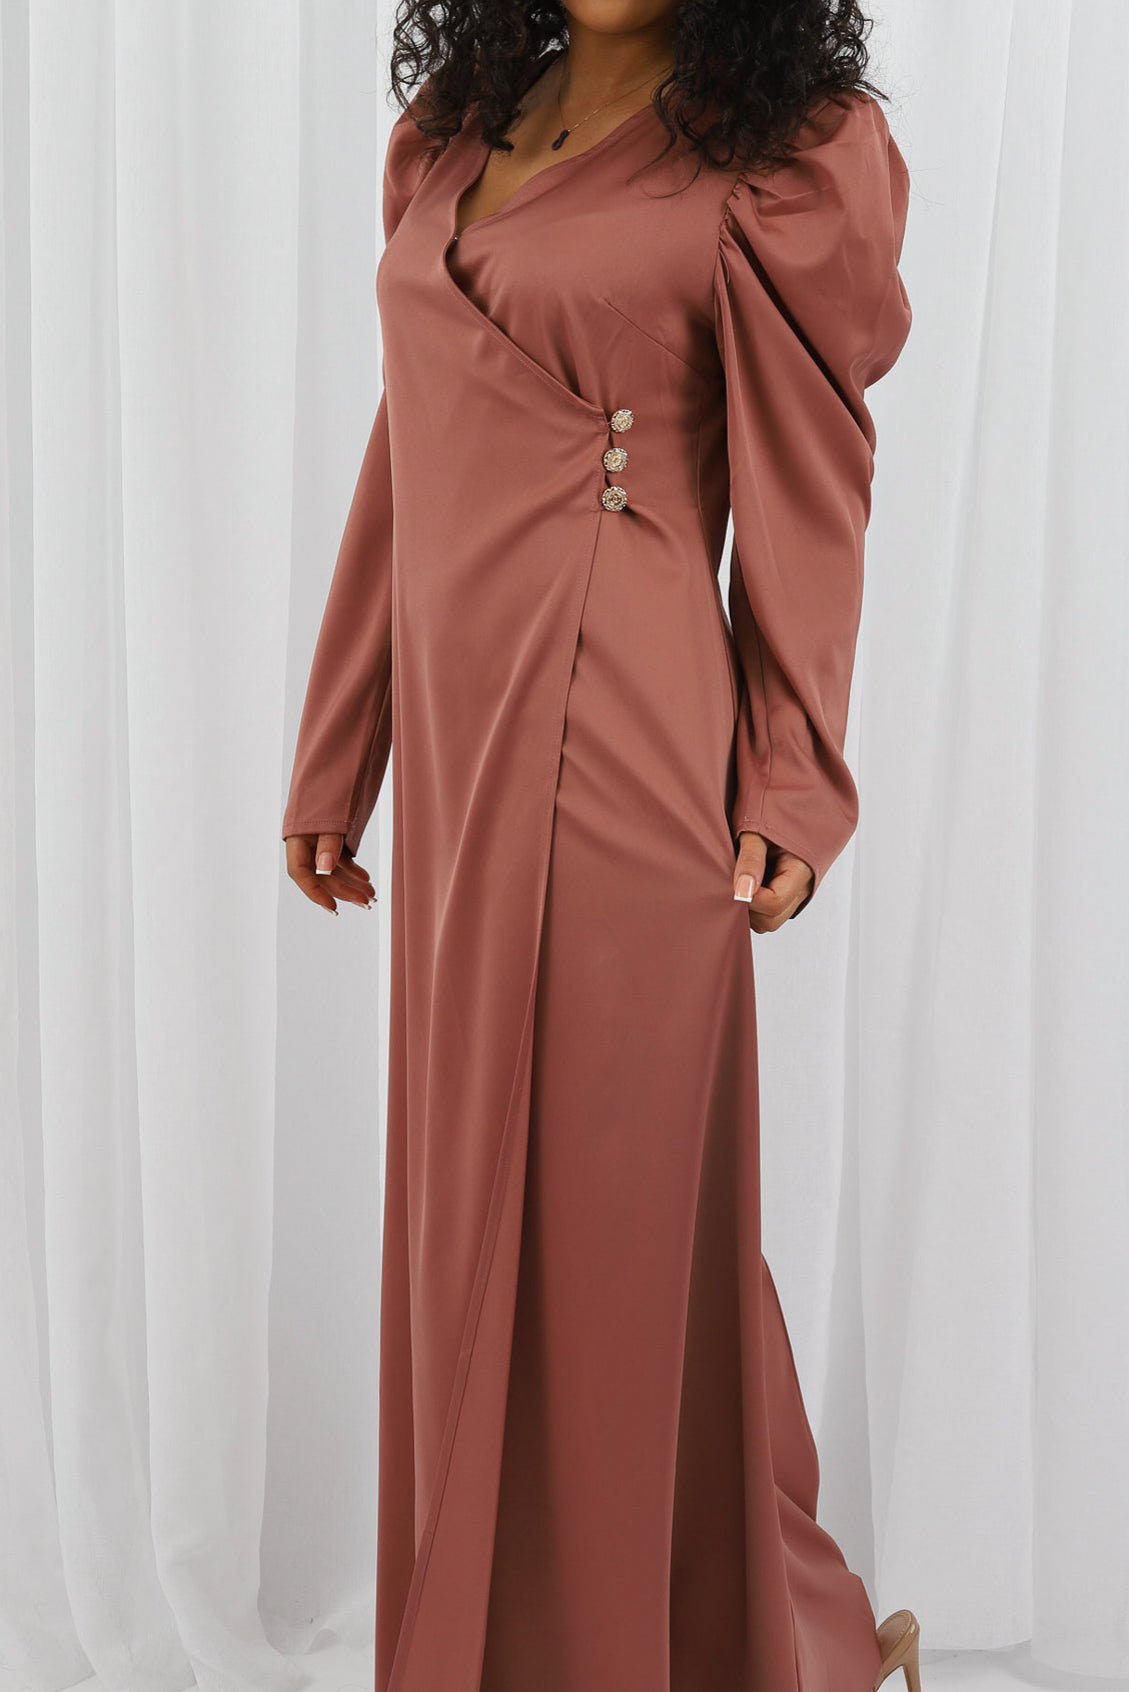 M7867Salmon-dress-abaya